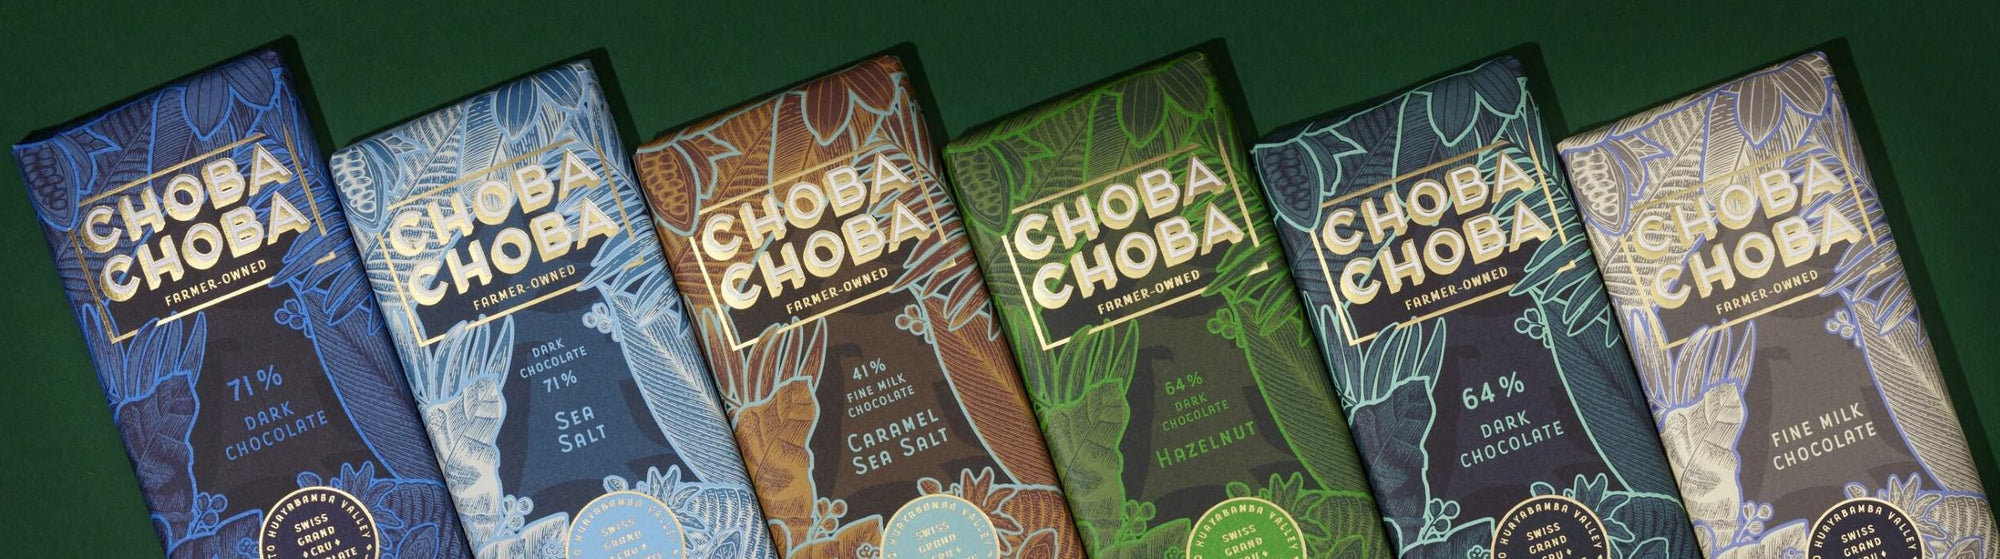 Choba Choba Produkte